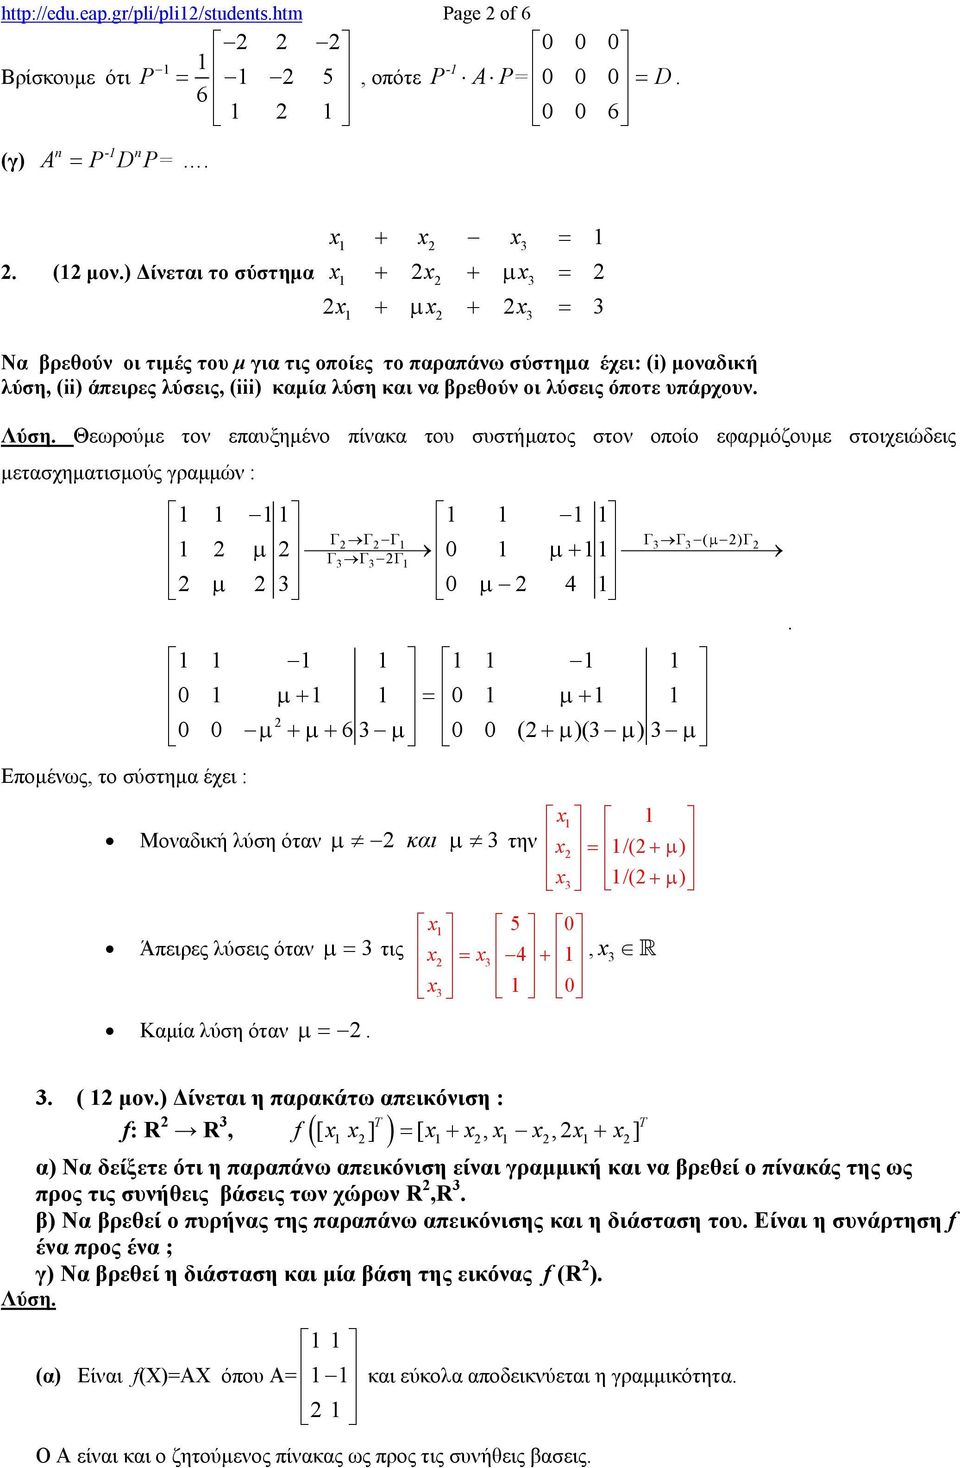 µετασχηµατισµούς γραµµών : Εποµένως, το σύστηµα έχει : Γ Γ Γ Γ Γ ( µ ) Γ µ Γ Γ Γ µ + µ µ 4 µ + µ + µ + µ + 6 µ ( + µ )( µ ) µ Μοναδική λύση όταν µ και µ την /( µ ) + /( + µ ) 5 Άπειρες λύσεις όταν µ